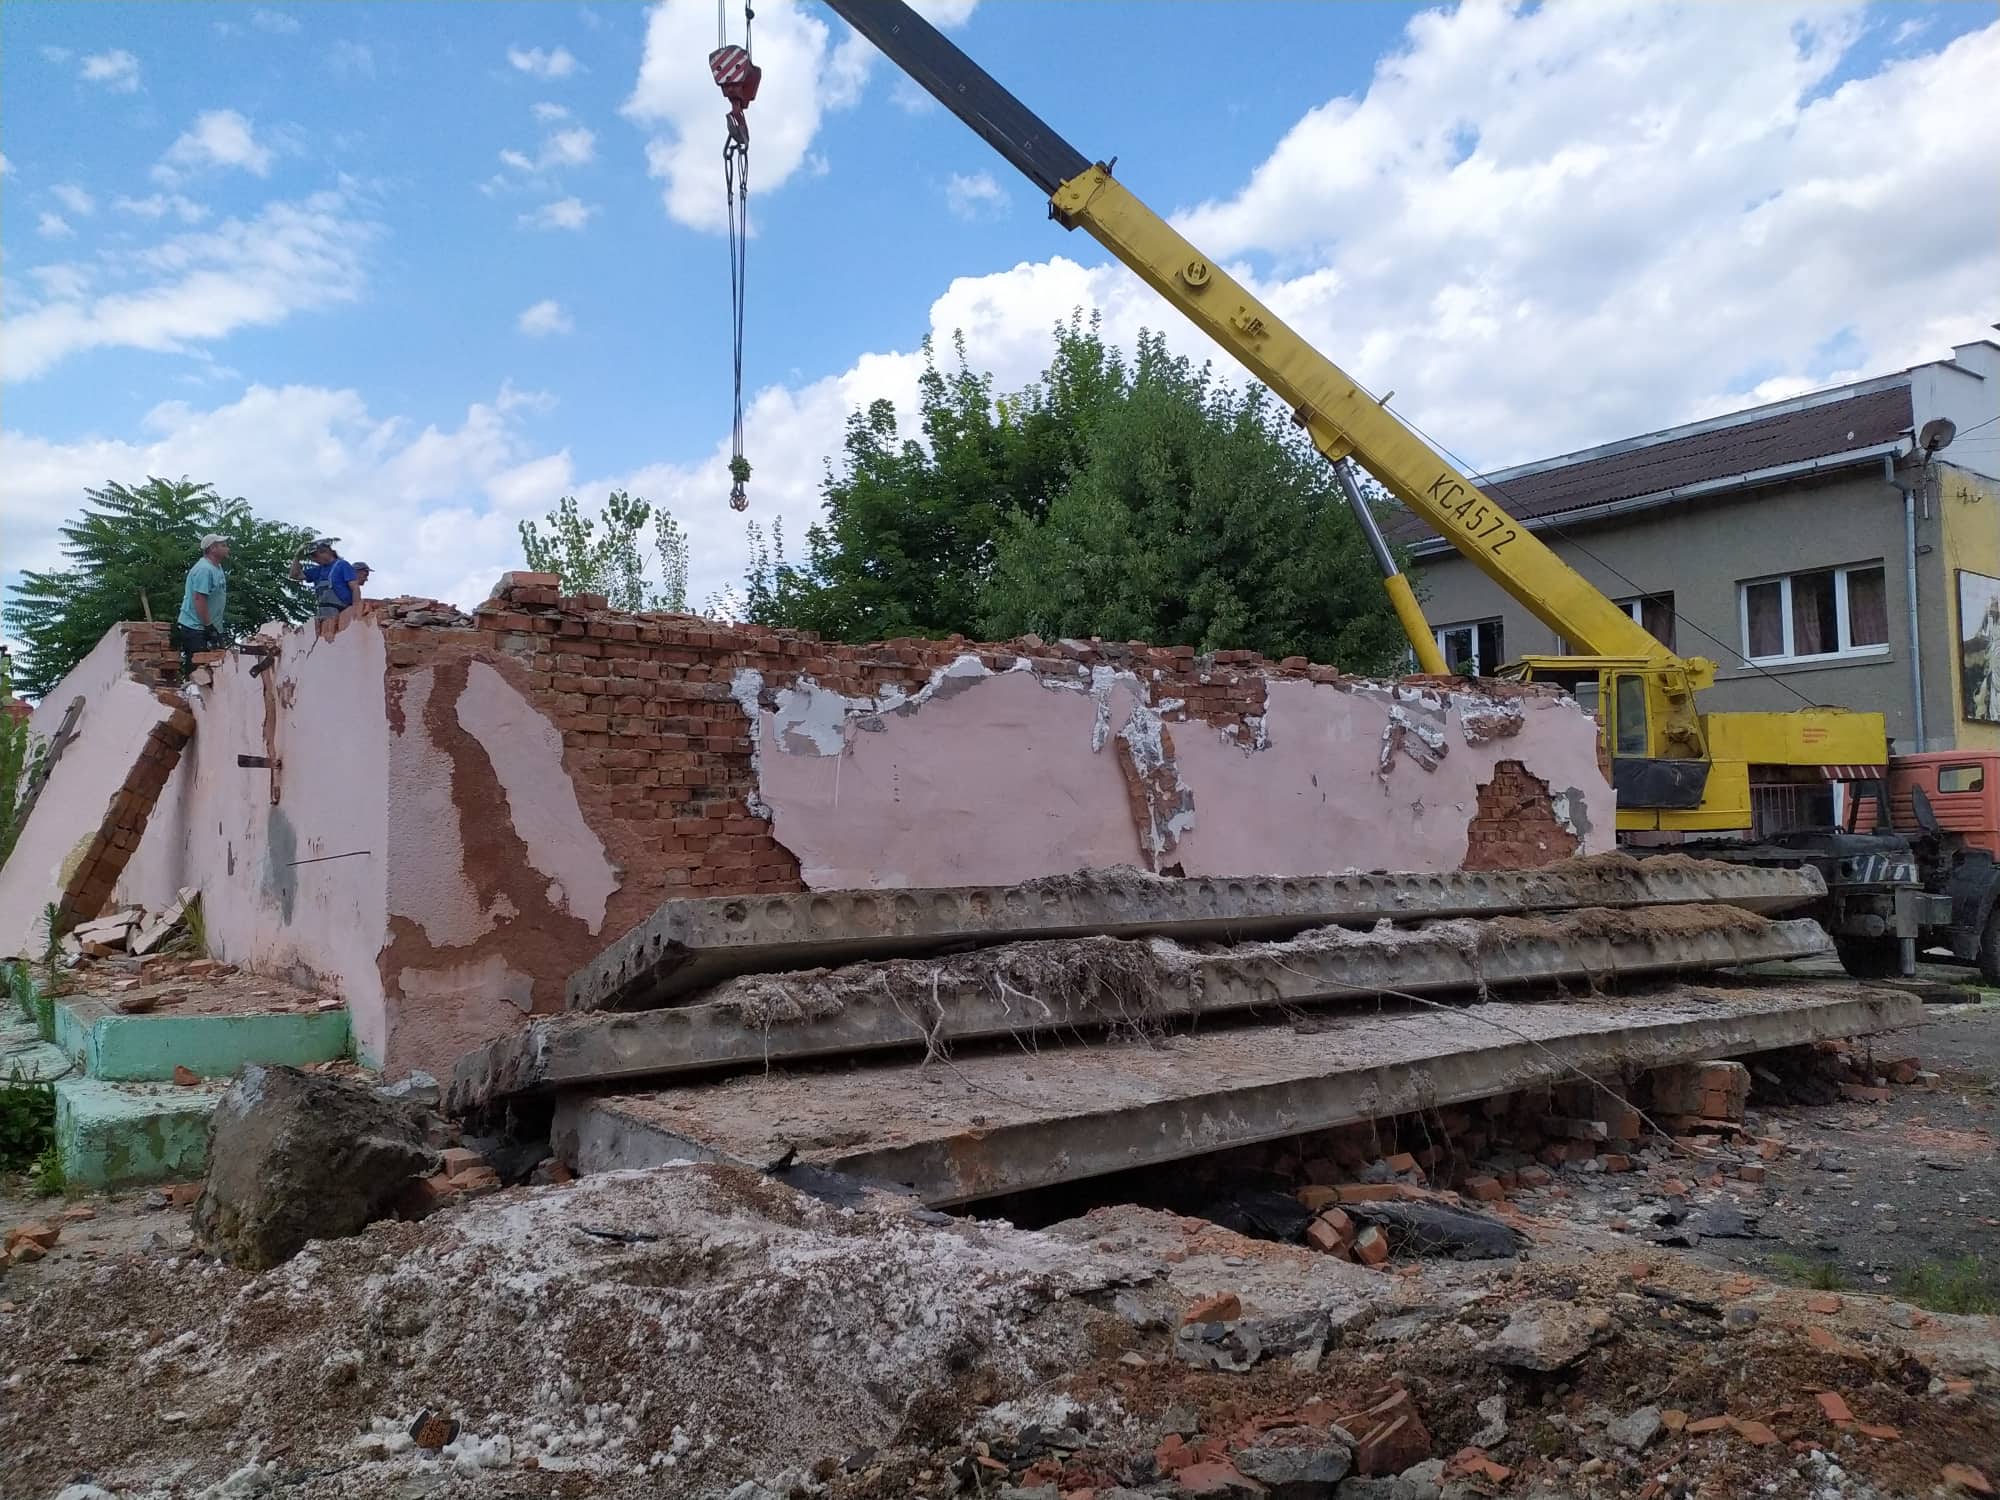 Наприкінці червня оформлено дозвіл на початок виконання будівельних робіт - реконструкція ДЮСШ по вул. Духновича, 93 в м. Мукачево.